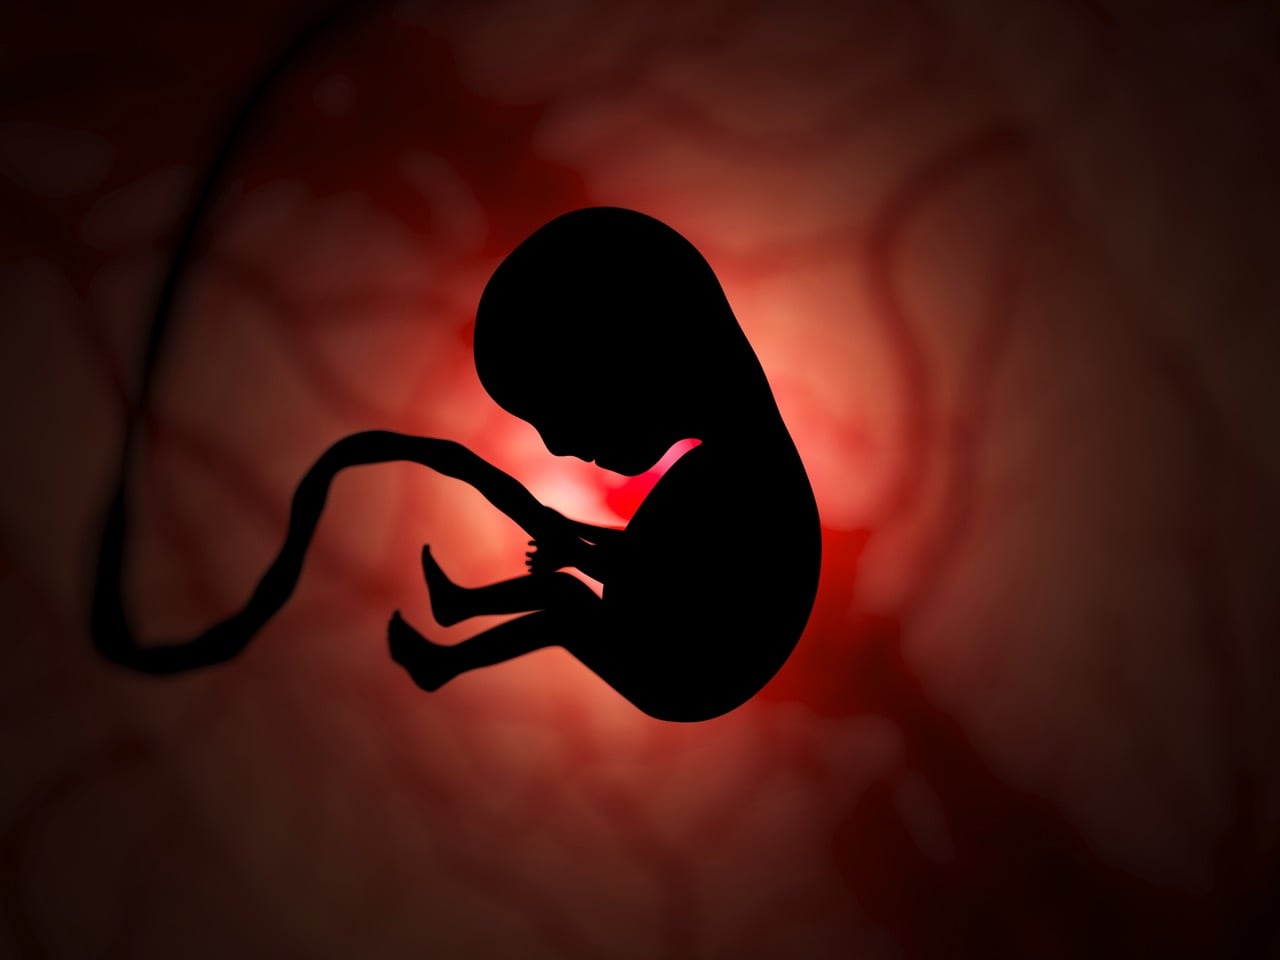 Imagem de uma ilustração médica mostrando uma gravidez ectópica, em que o embrião se desenvolve fora do útero, geralmente nas trompas de Falópio.